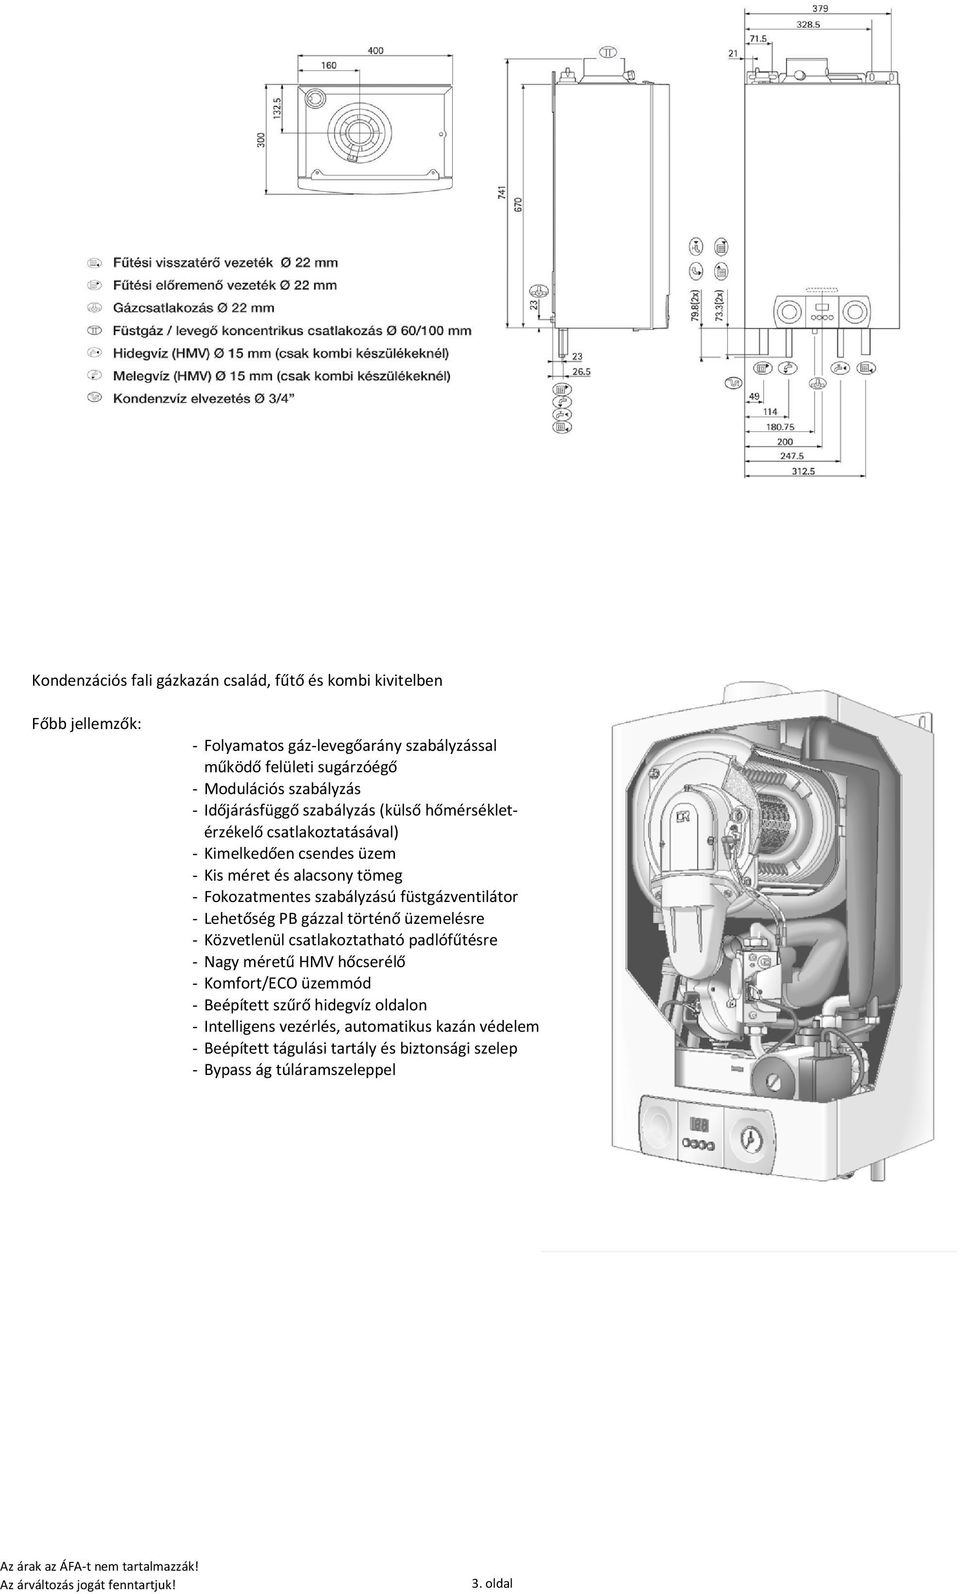 füstgázventilátor - Lehetőség PB gázzal történő üzemelésre - Közvetlenül csatlakoztatható padlófűtésre - Nagy méretű HMV hőcserélő - Komfort/ECO üzemmód - Beépített szűrő